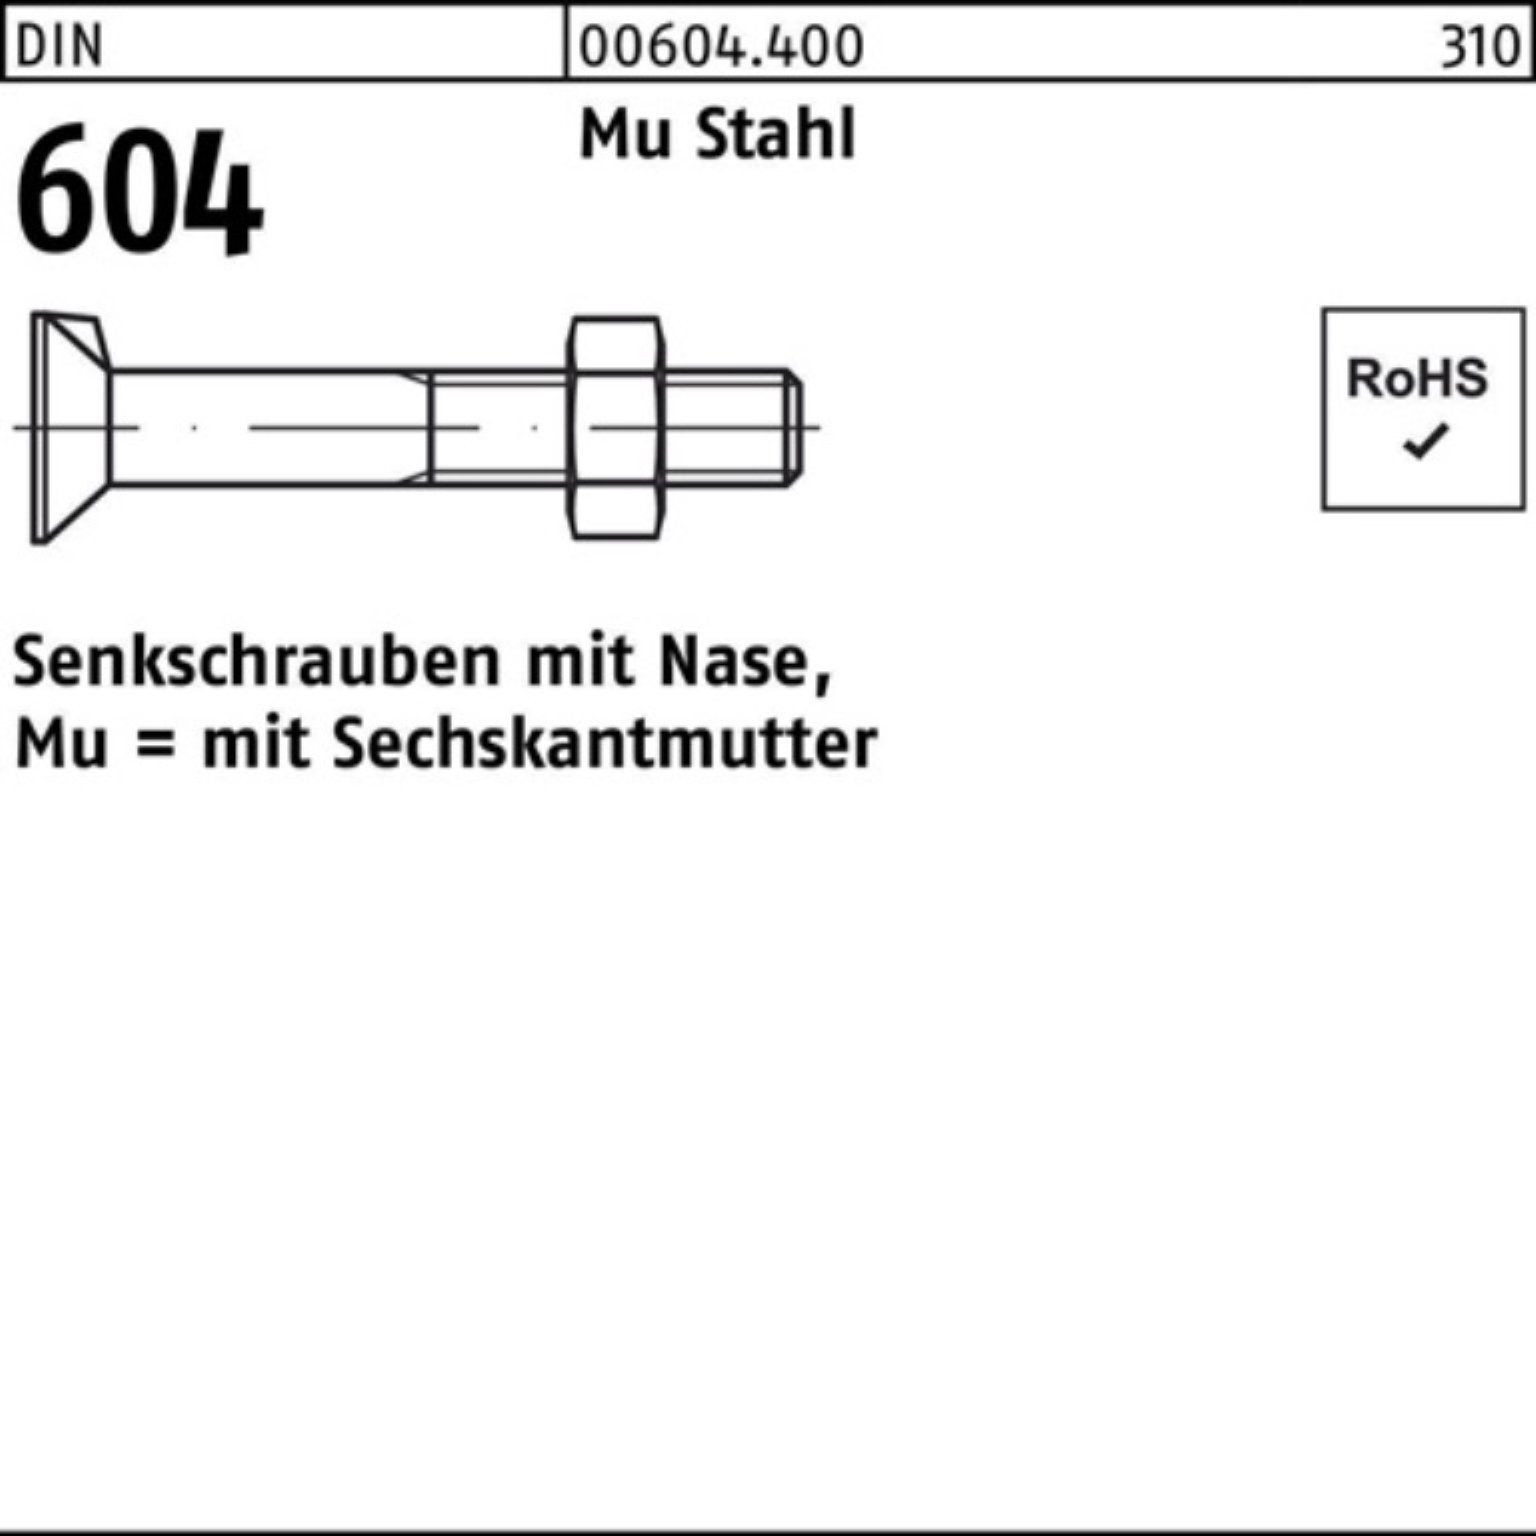 Reyher Senkschraube 100er Pack Senkschraube 110 M12x Stahl 4.6 Nase/6-ktmutter DIN 604 Mu